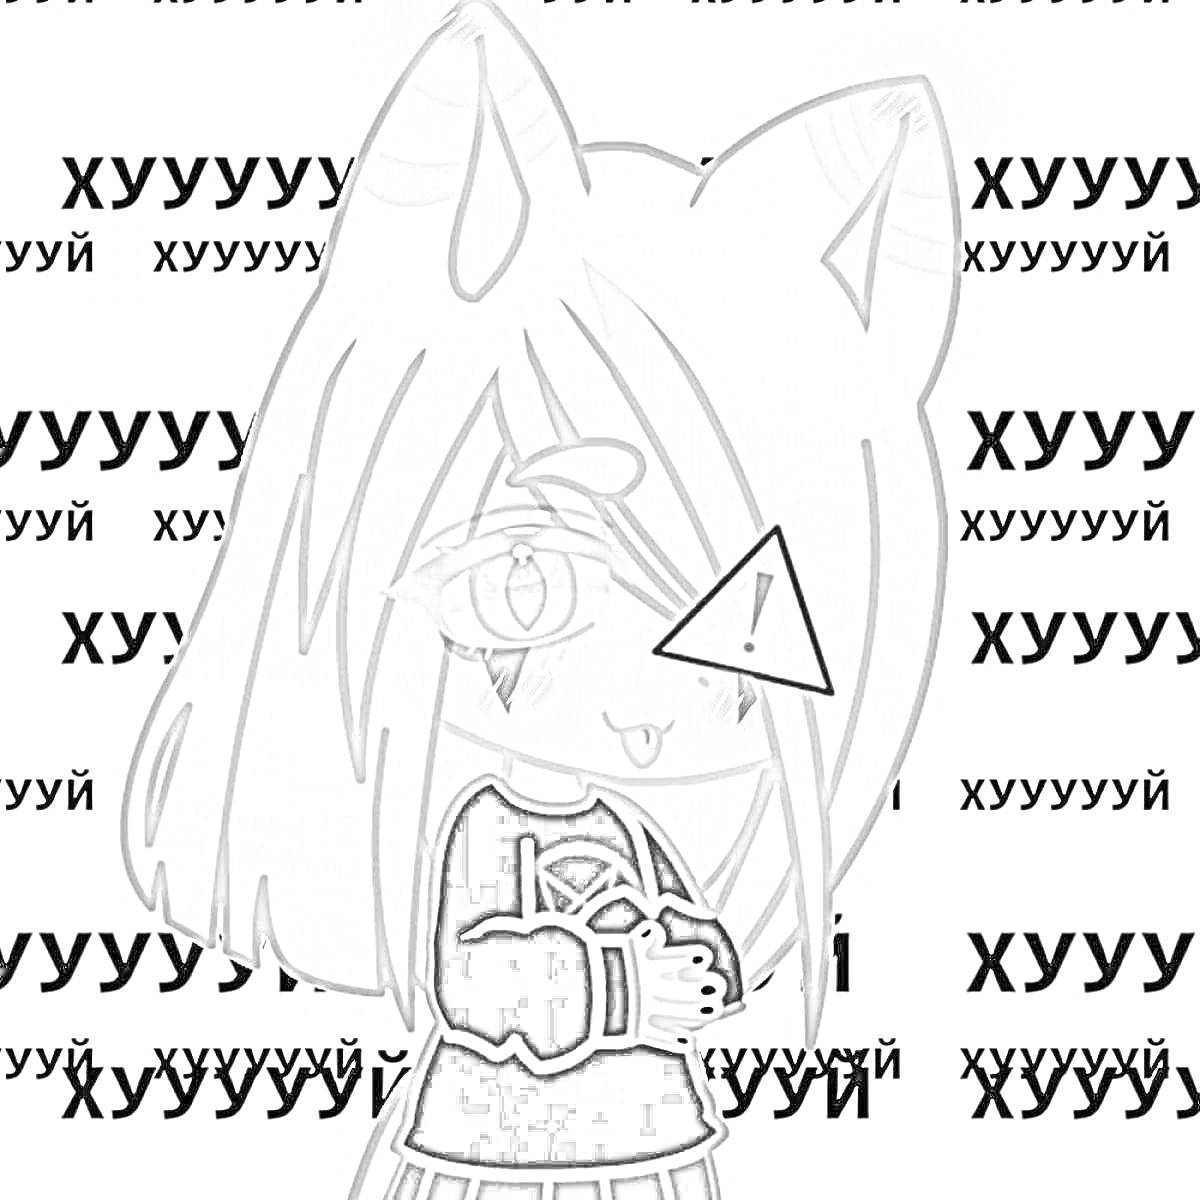 Раскраска Гача Лайф персонаж с кошачьими ушками, длинными светлыми волосами, значком предупреждения на глазу, в черной одежде с сердцем, на фоне повторяющегося текста